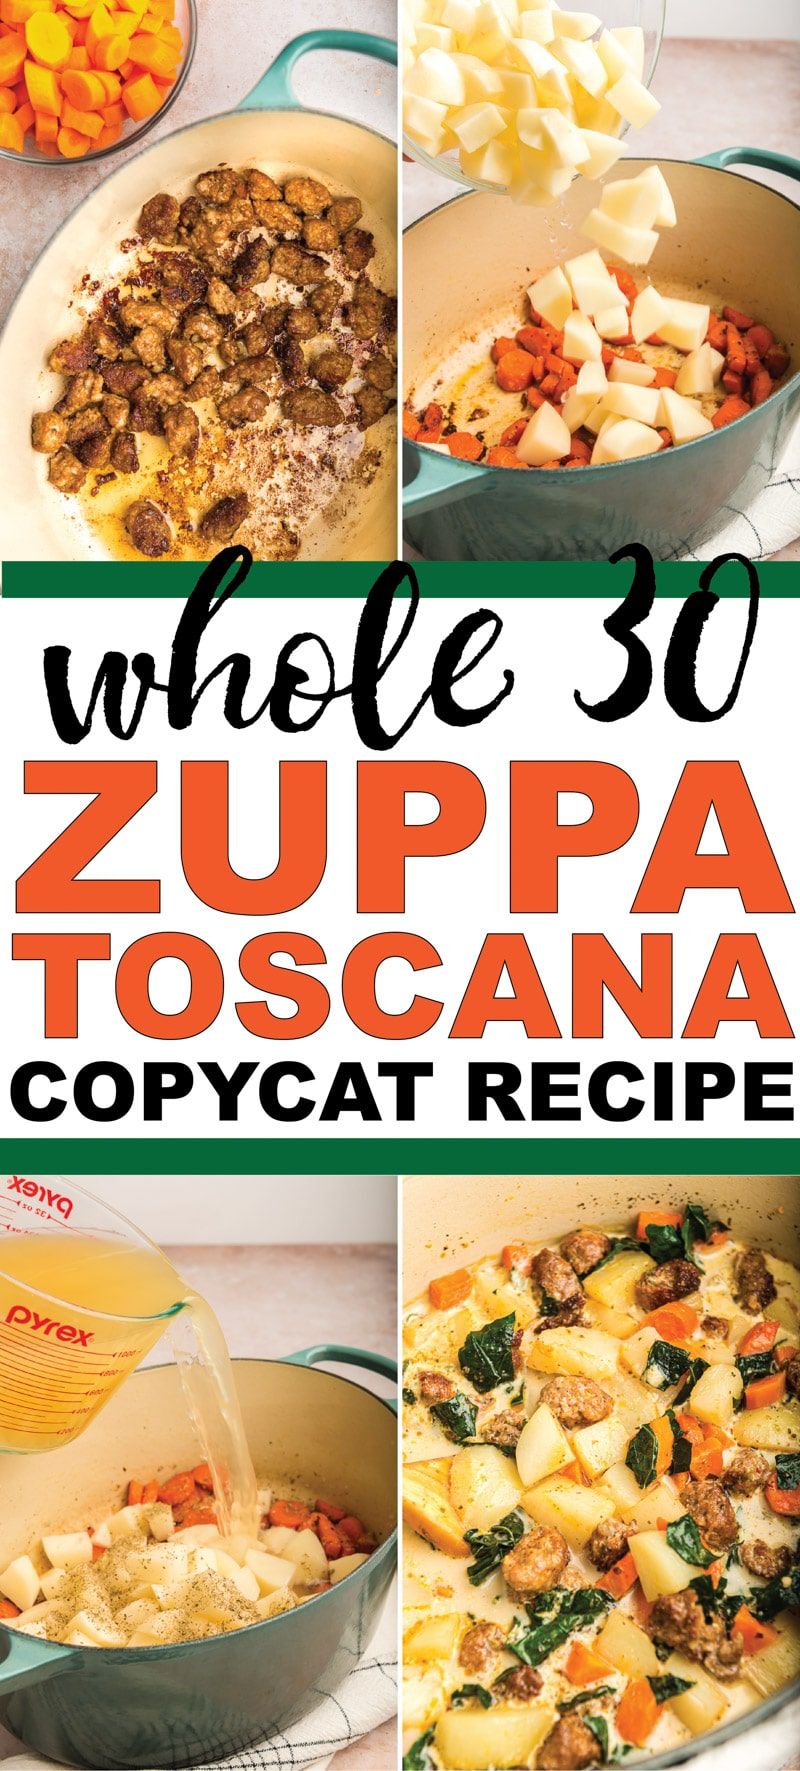 Cea mai bună rețetă copiată de supă zuppa toscana Garden! Ușor de făcut și atât de bun încât nu veți ști niciodată că este de fapt suficient de sănătos pentru a mânca pe Whole 30!